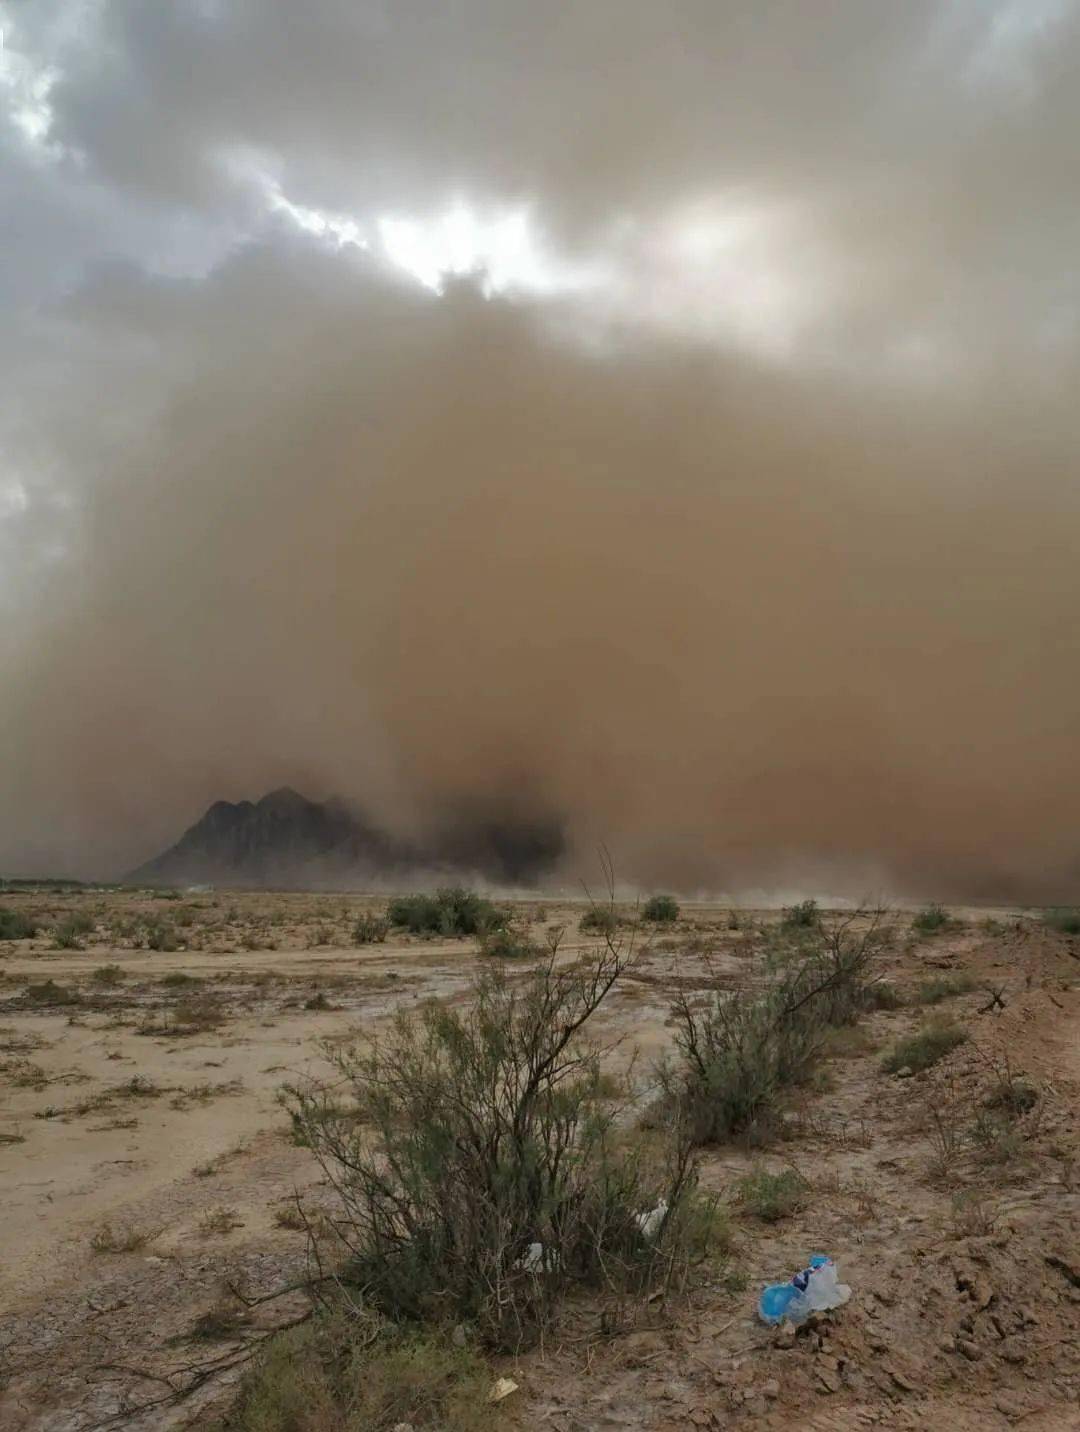 视频骇人!内蒙古一地遭罕见强沙尘暴袭击